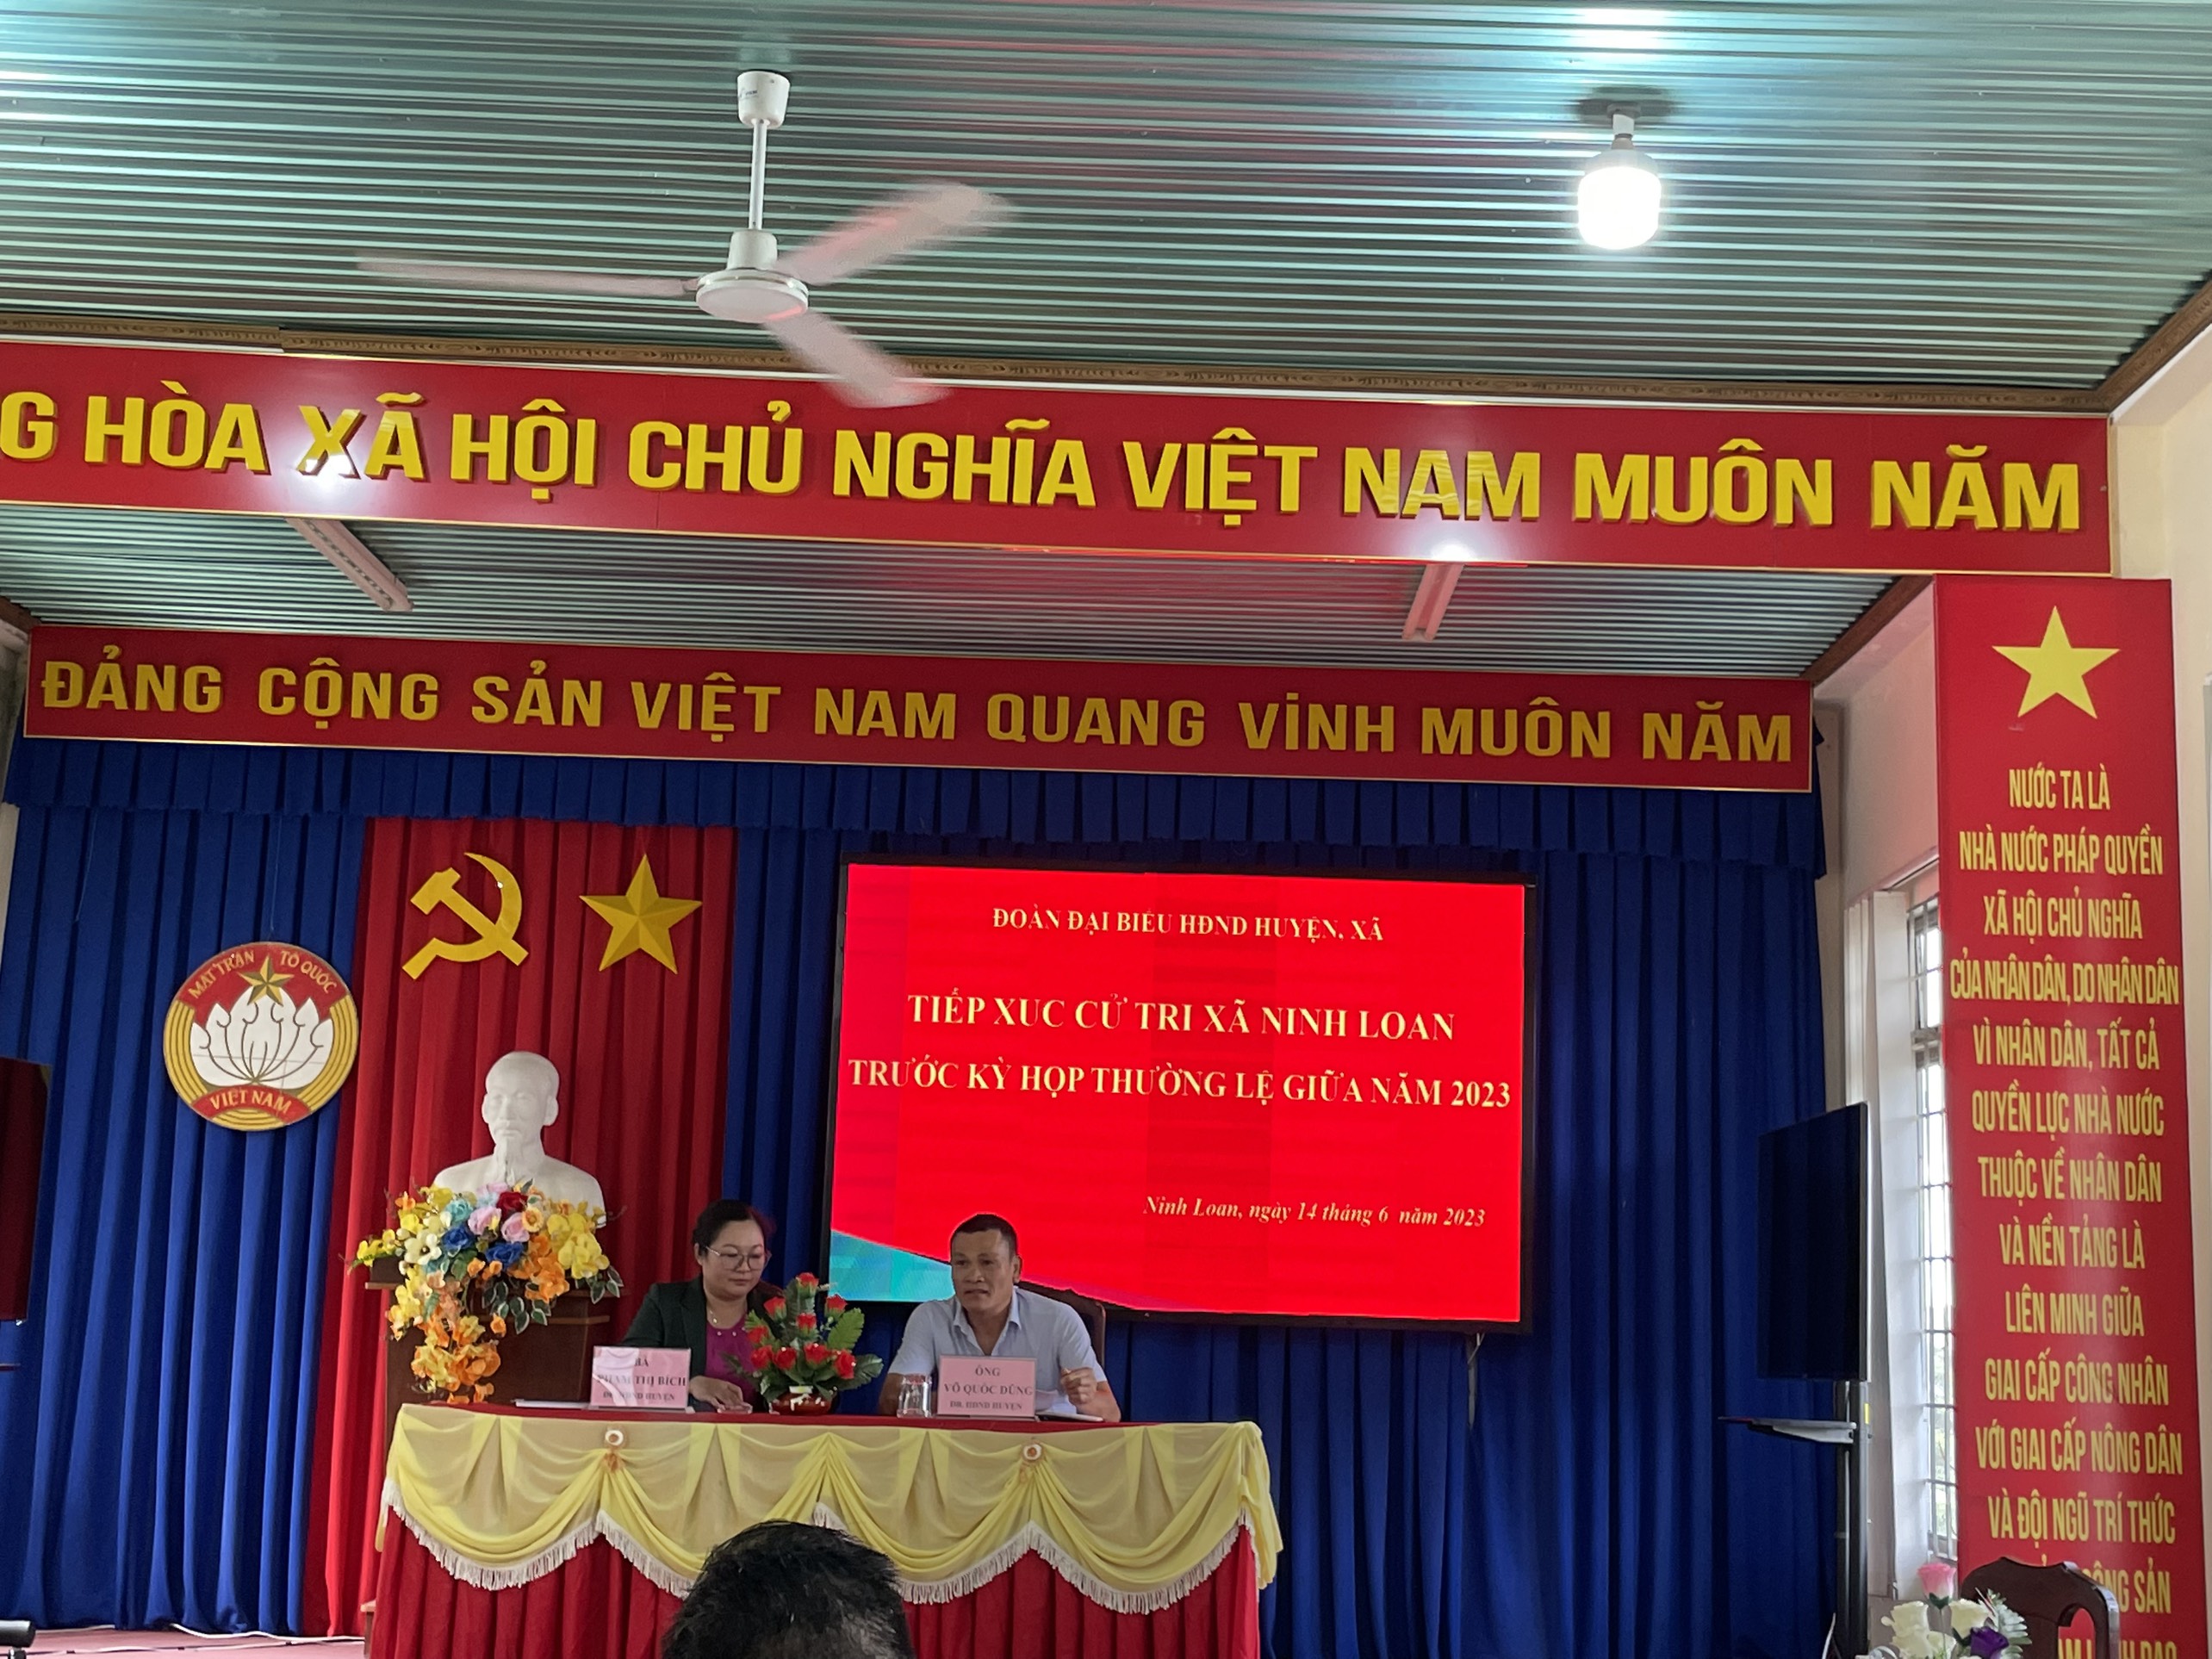 Đoàn Đại biểu HĐND huyện, xã tiếp xúc cử tri xã Ninh Loan